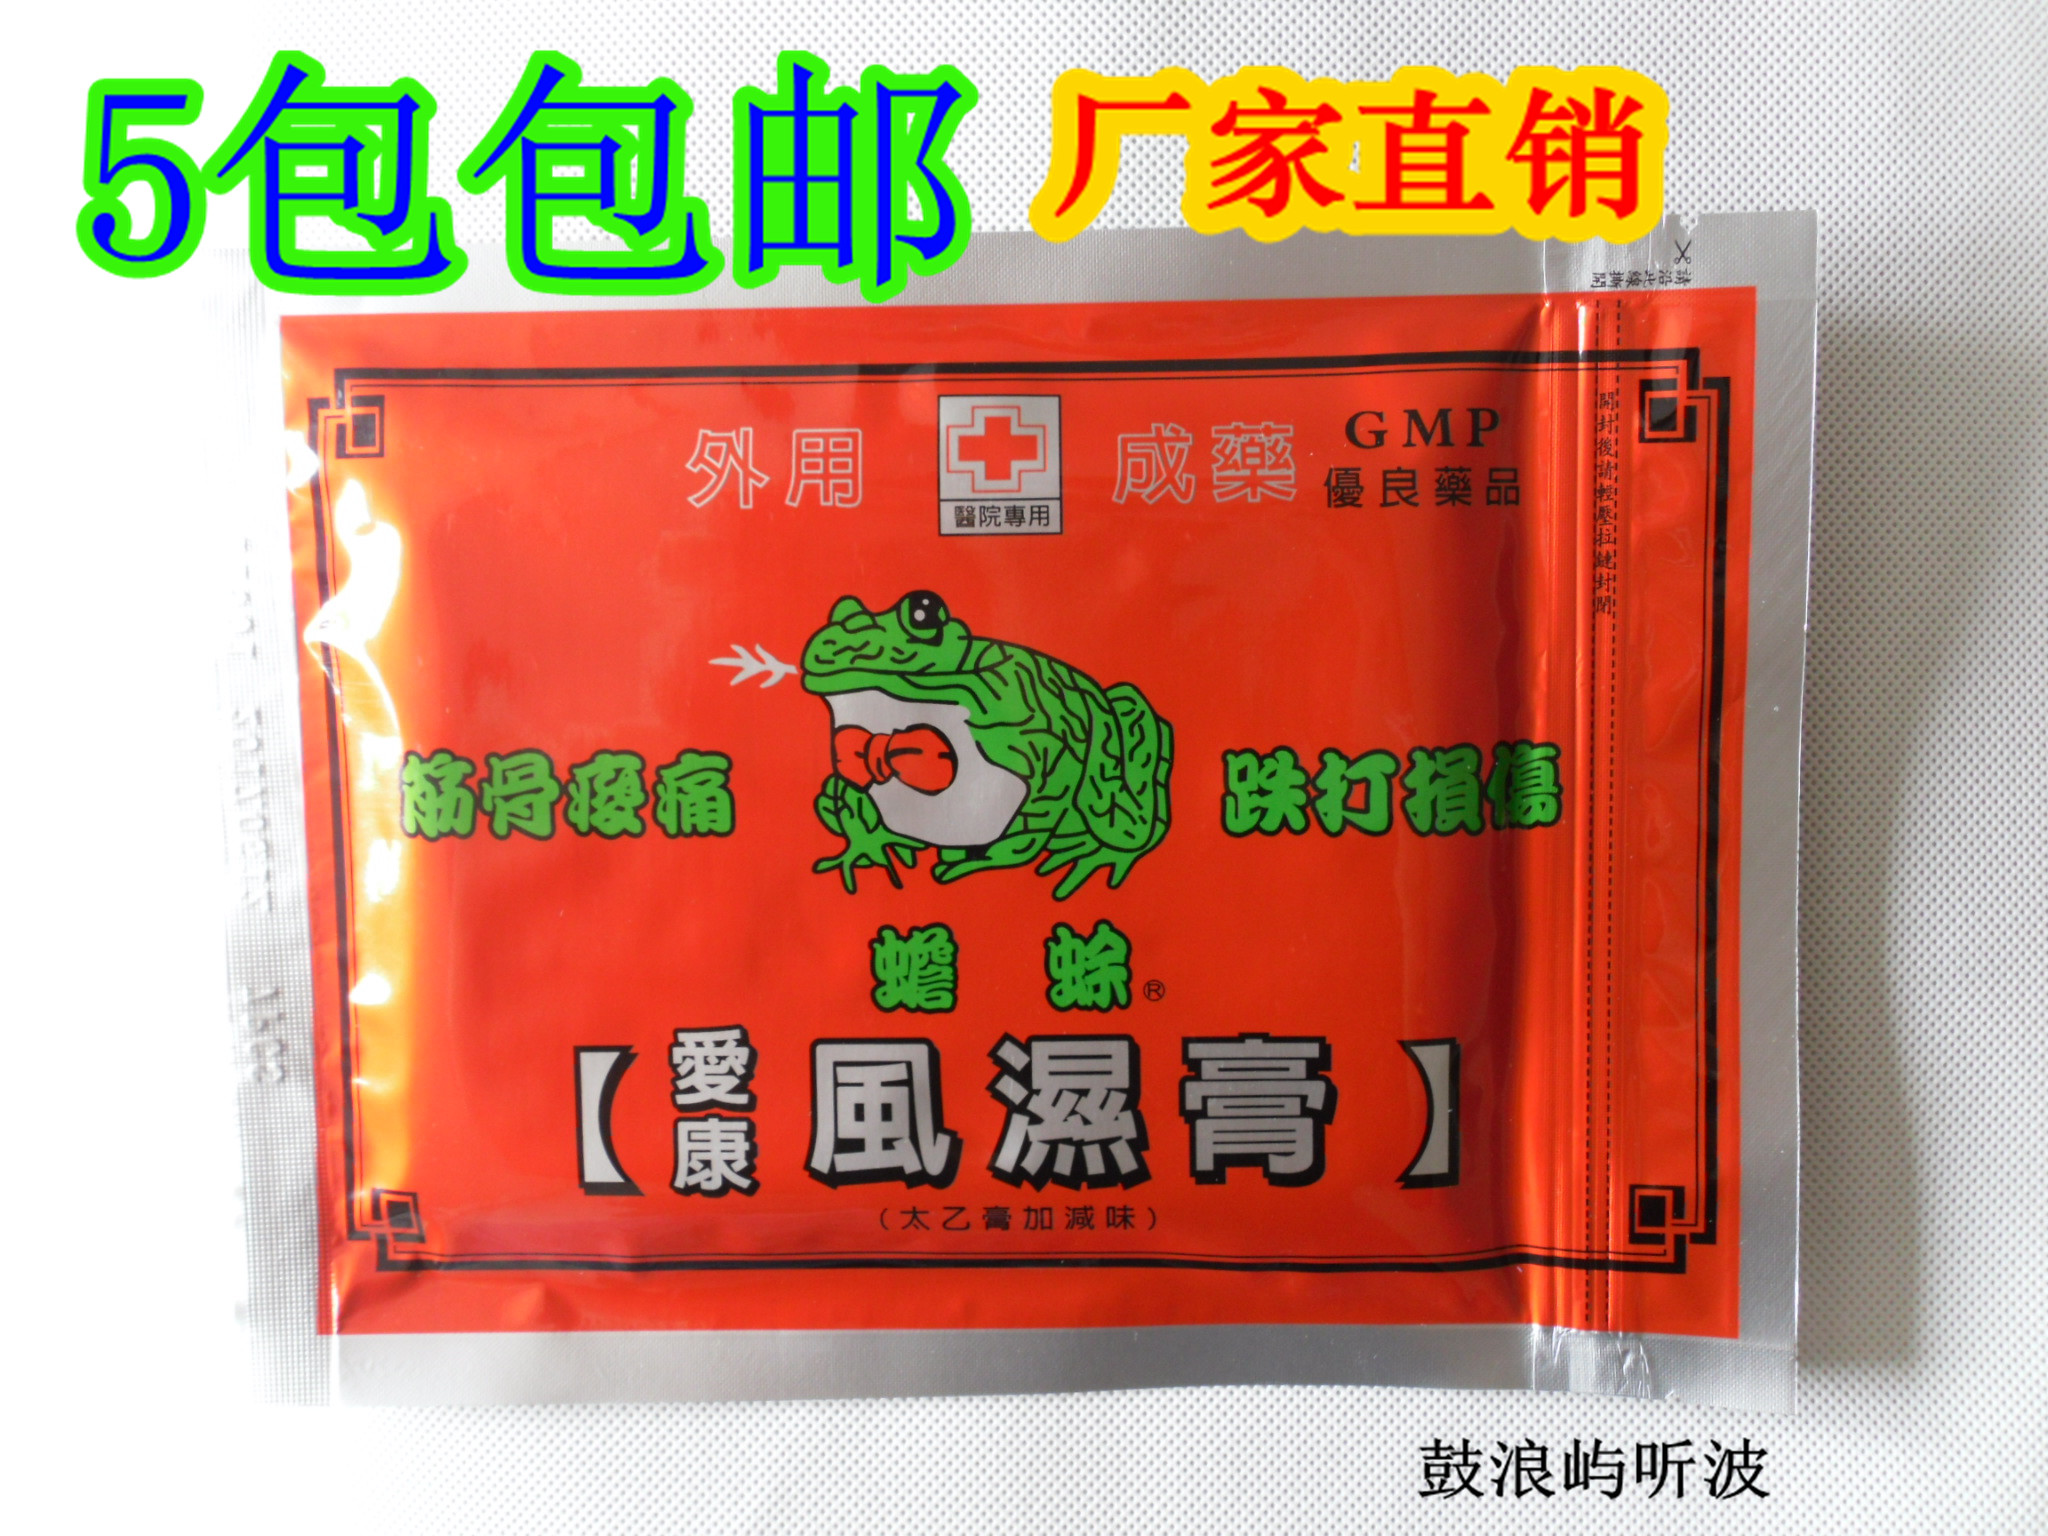 台湾爱康 蟾蜍牌 爱康贴布 外用成药GMP优良 太乙膏加减味